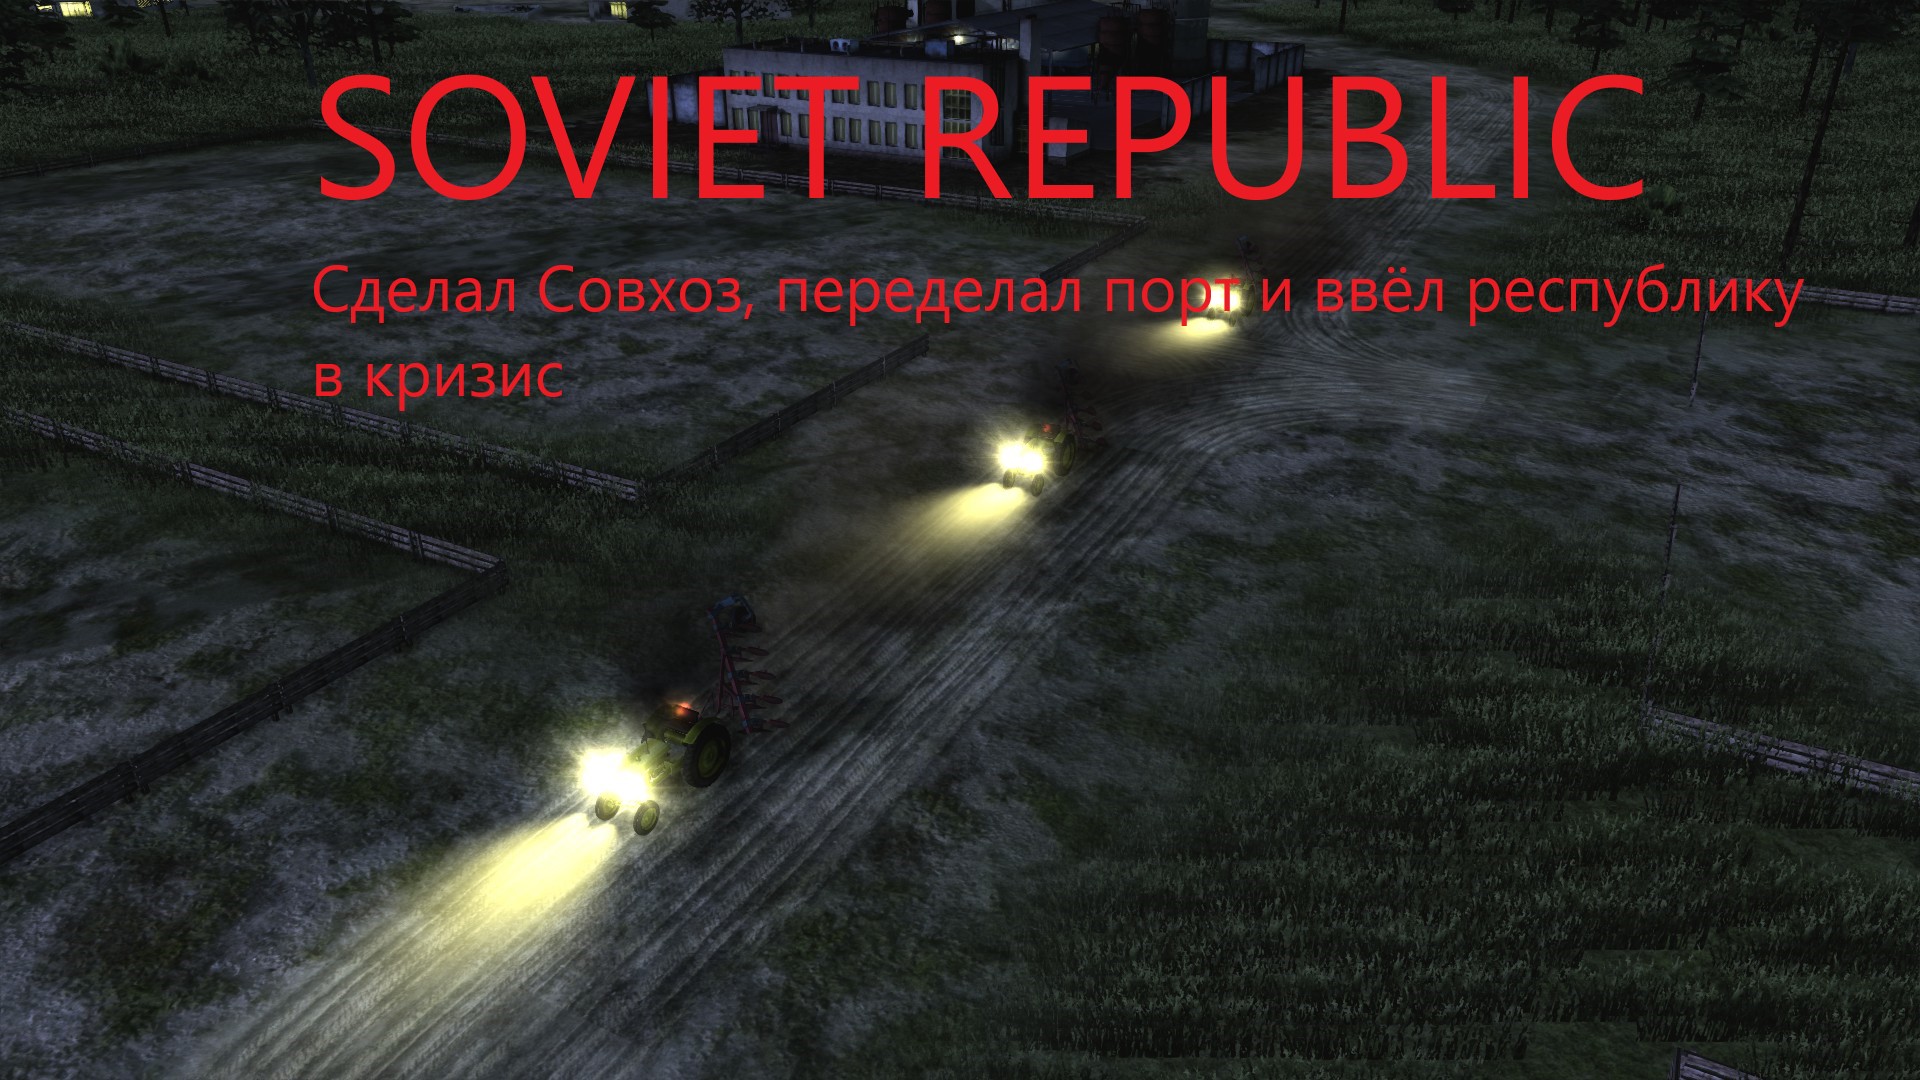 Soviet Republic - #2 Республика в большом кризисе!